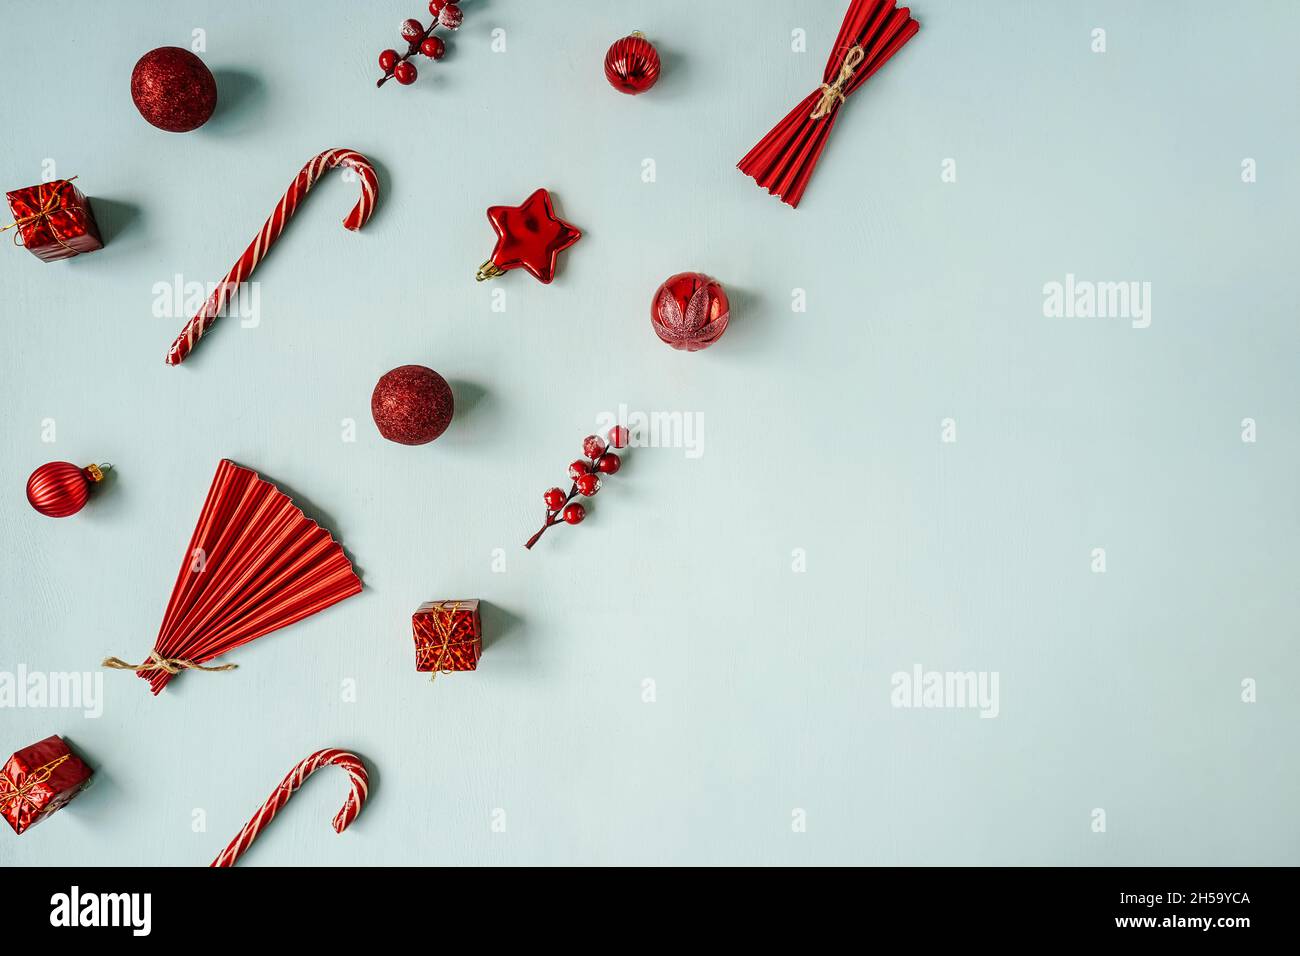 Décoration rouge boules de Noël sur fond bleu.Flat lay, espace de copie.Concept de vacances. Banque D'Images